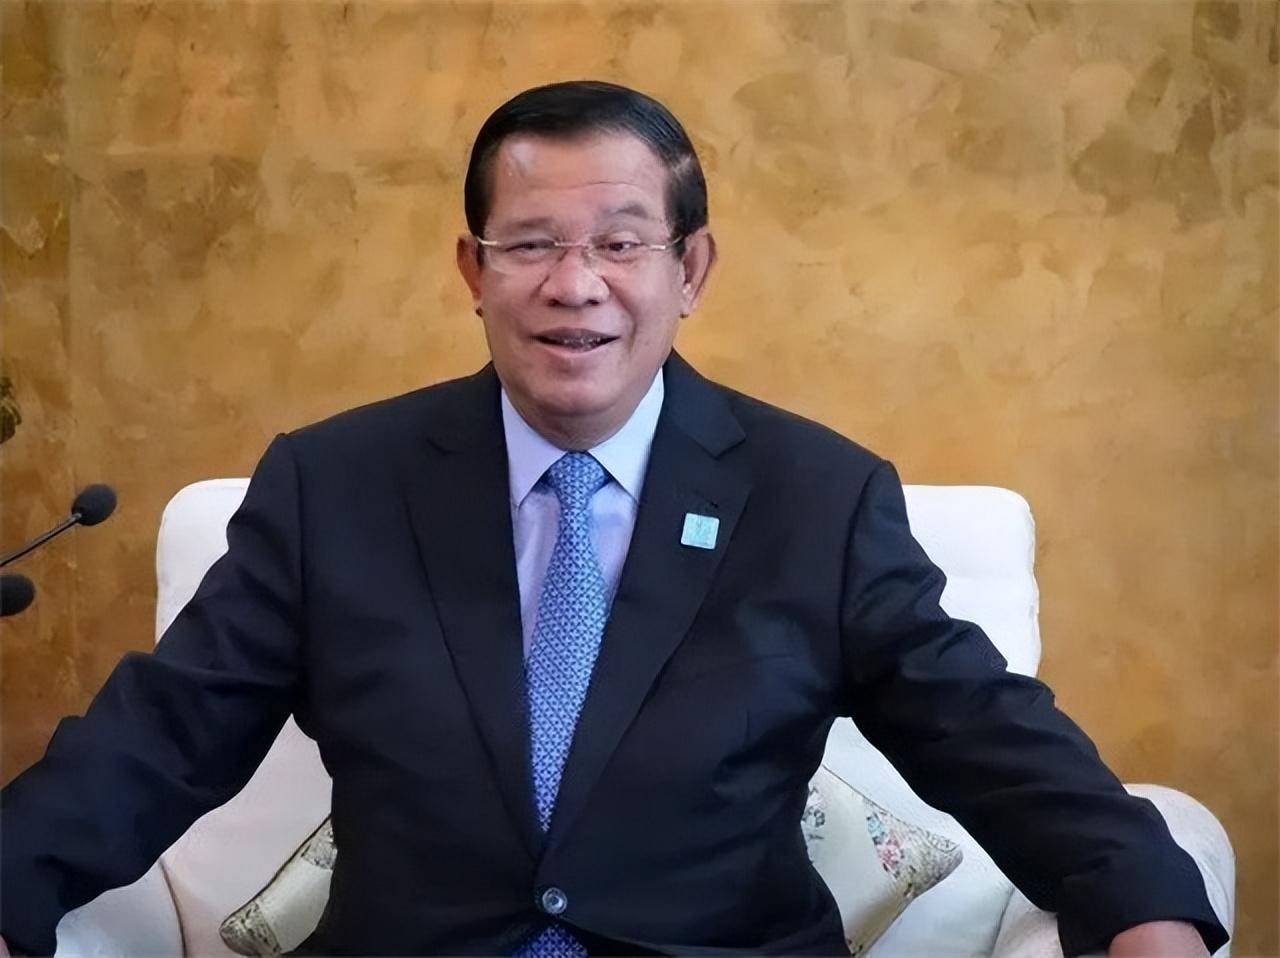 柬埔寨首相洪森:会重蹈罗马尼亚前总统齐奥塞斯库的覆辙吗